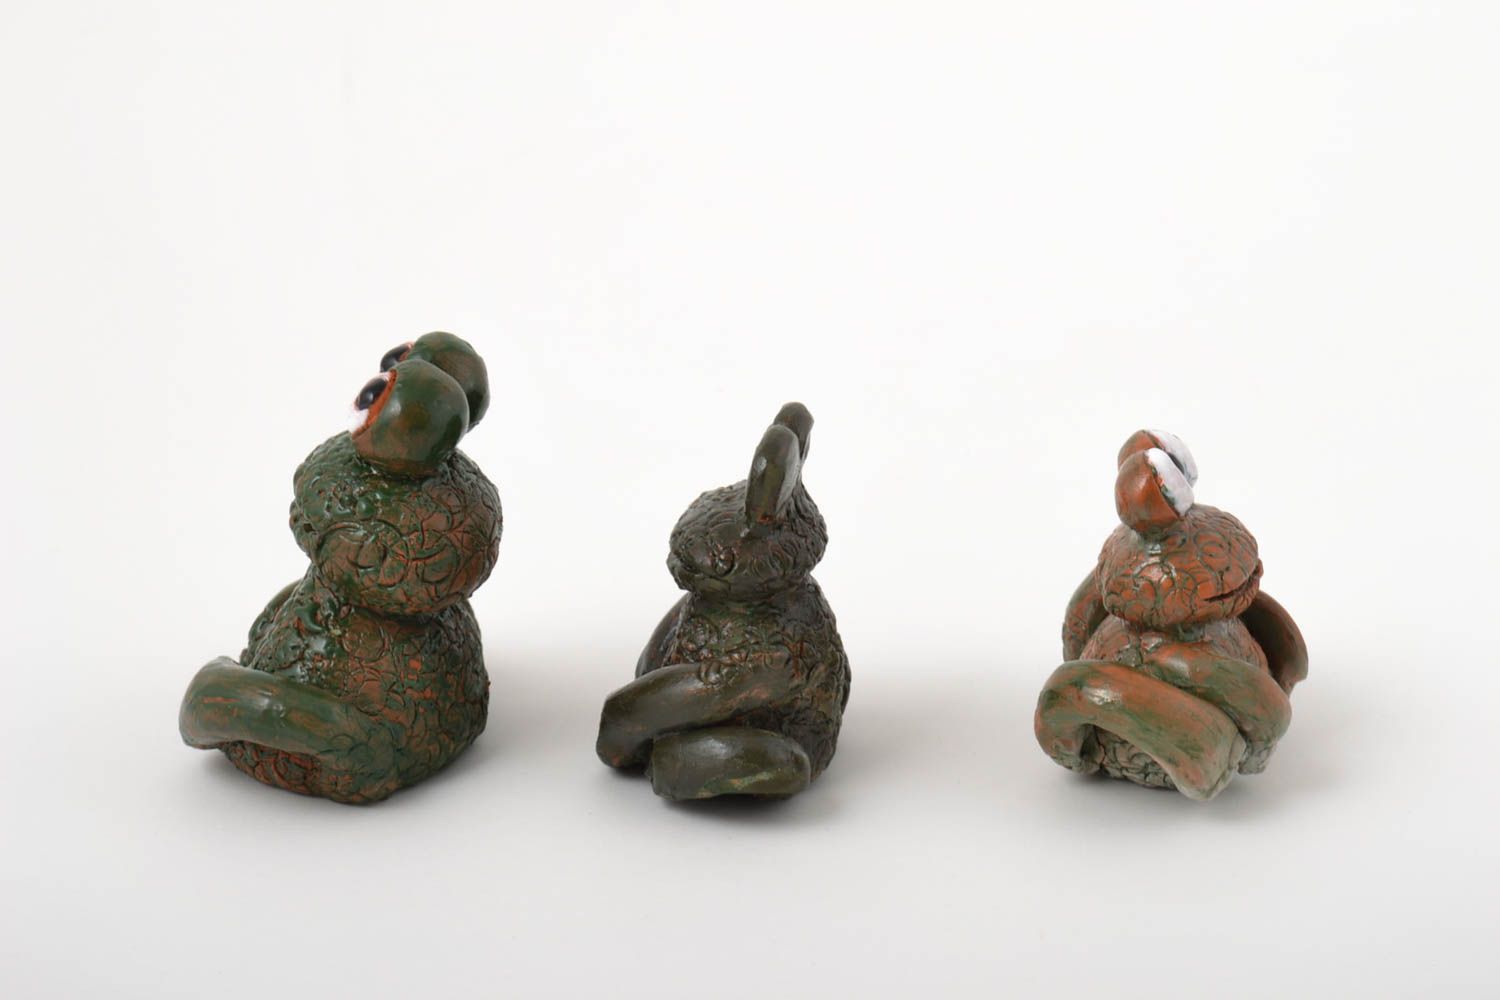 Игрушки из глины фигурки животных хэнд мейд коллекционные фигурки набор 3 штуки фото 3